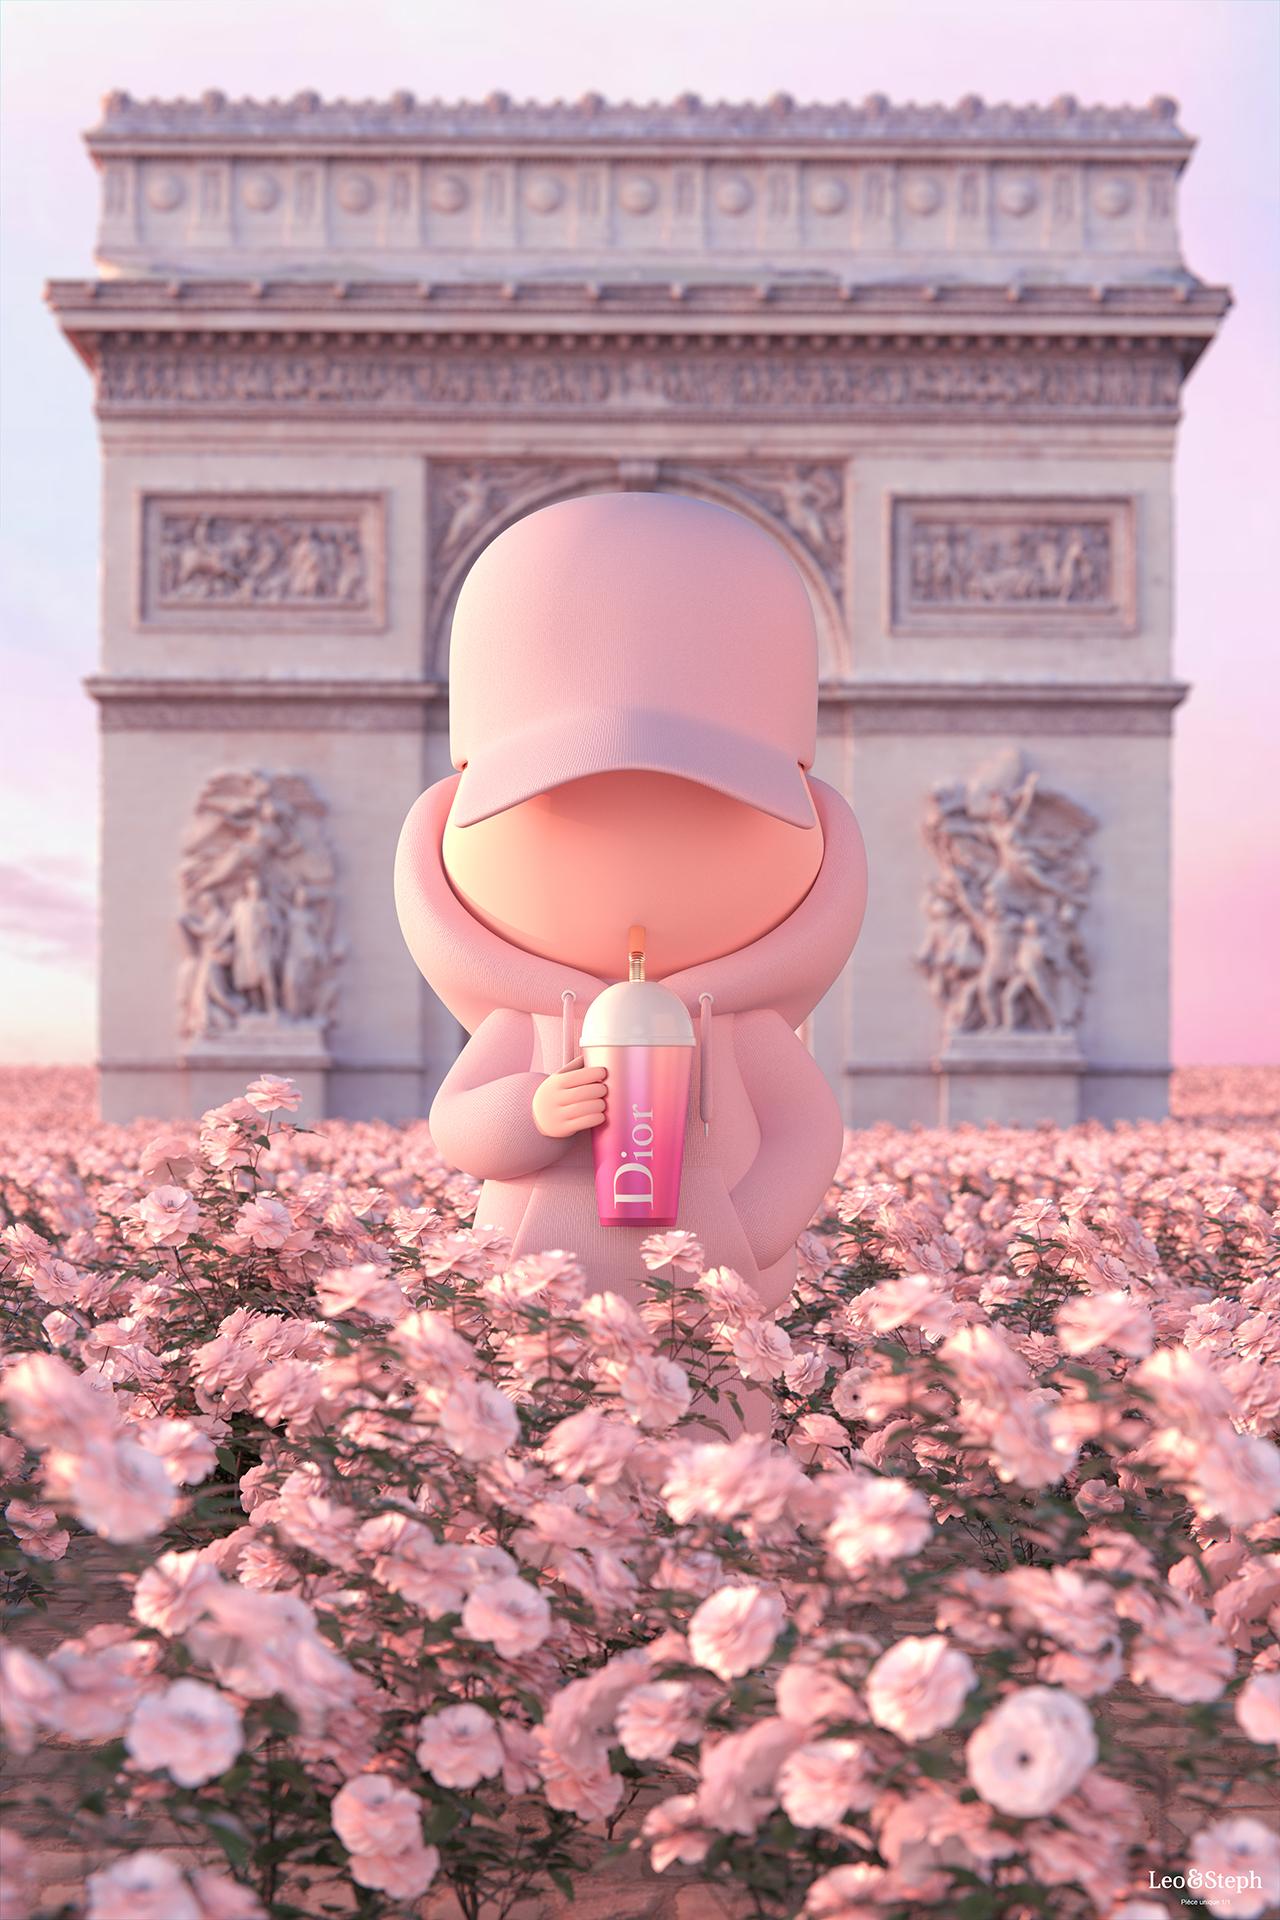 Kidcup Paris - One of a kind - Digital print